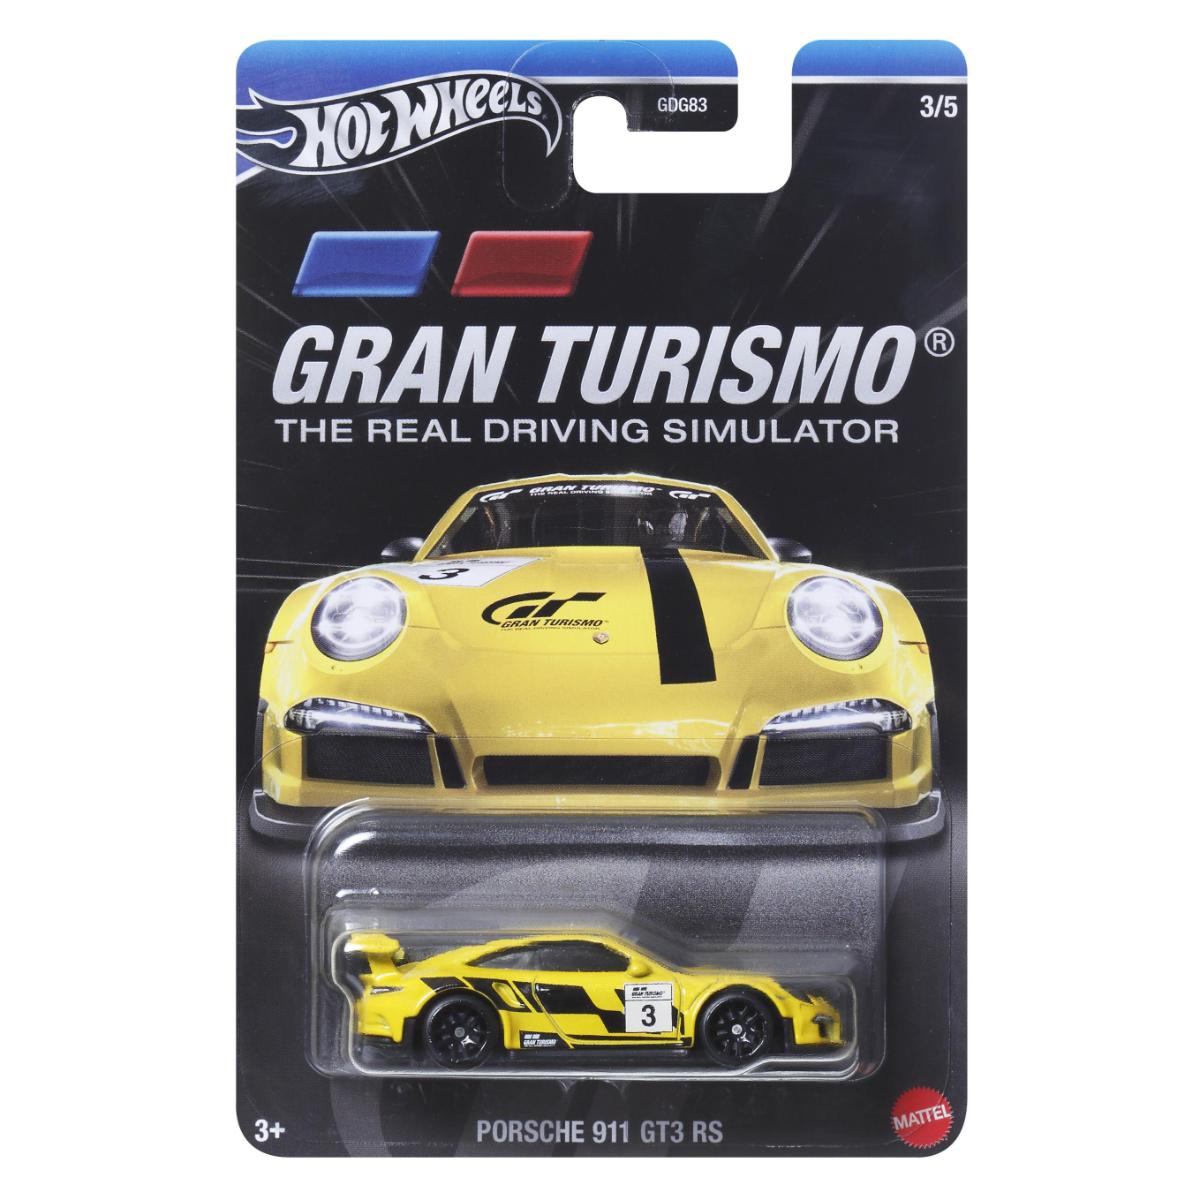 Masinuta metalica, Hot Wheels, Gran Turismo, Porsche 911 GT3 RS, HRV65